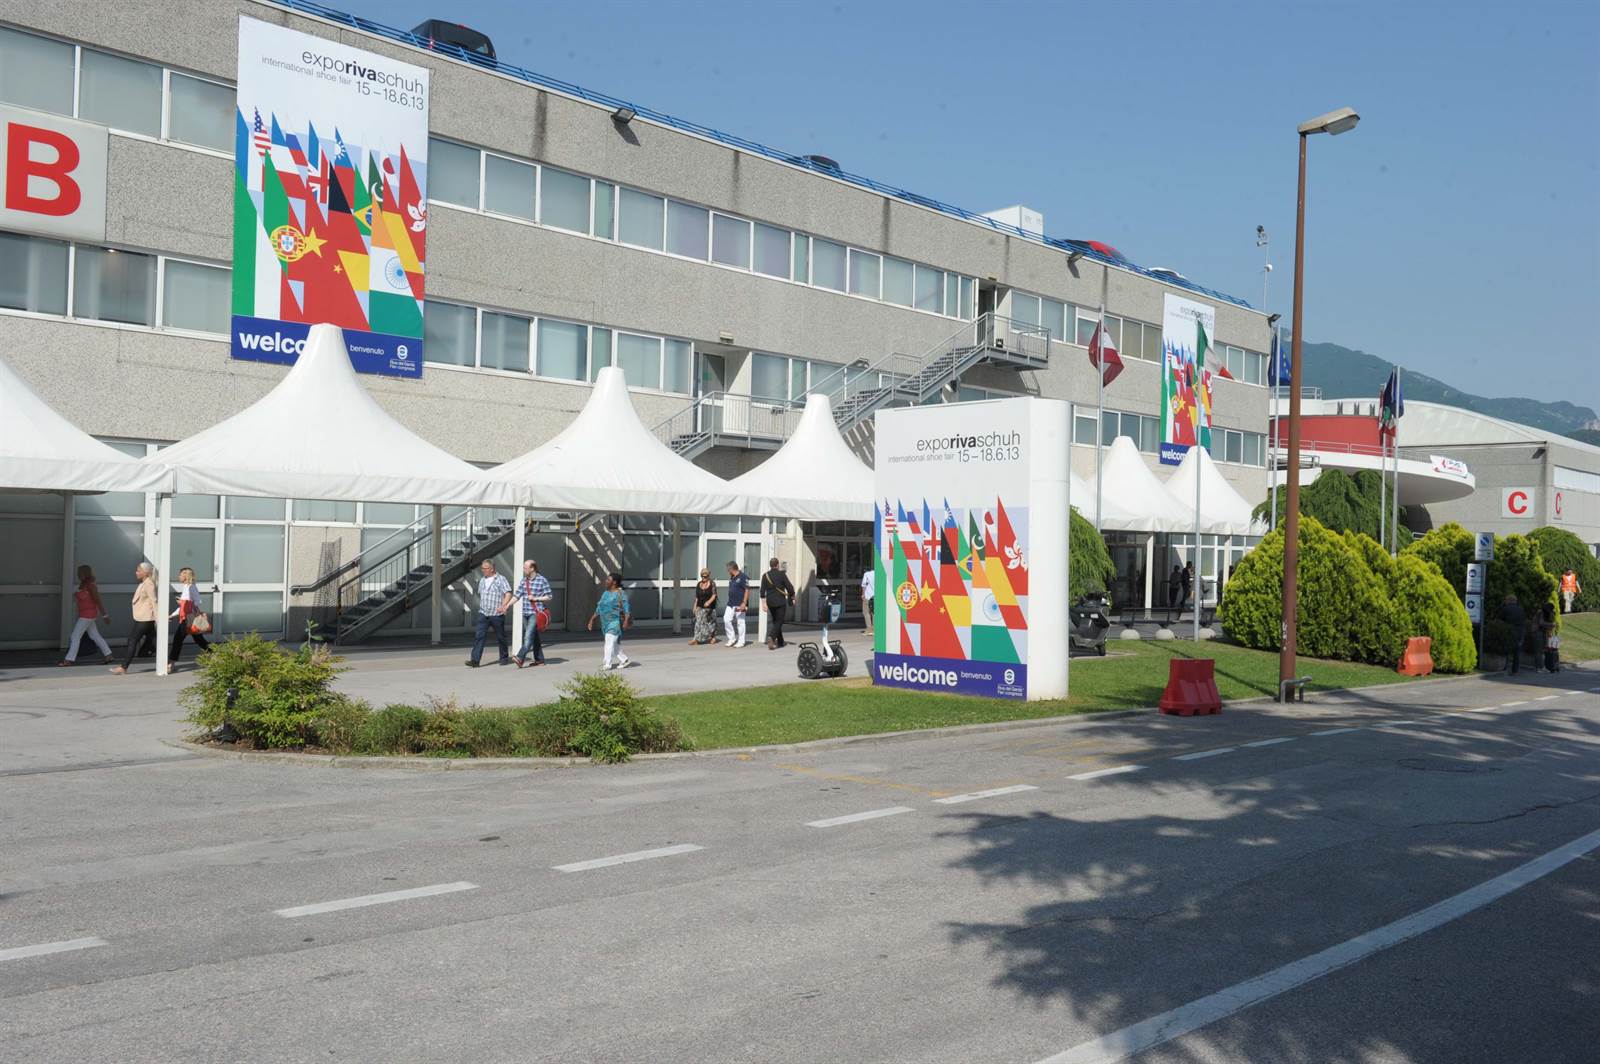 Servizio navetta per la fiera Expo Riva Schuh 2019